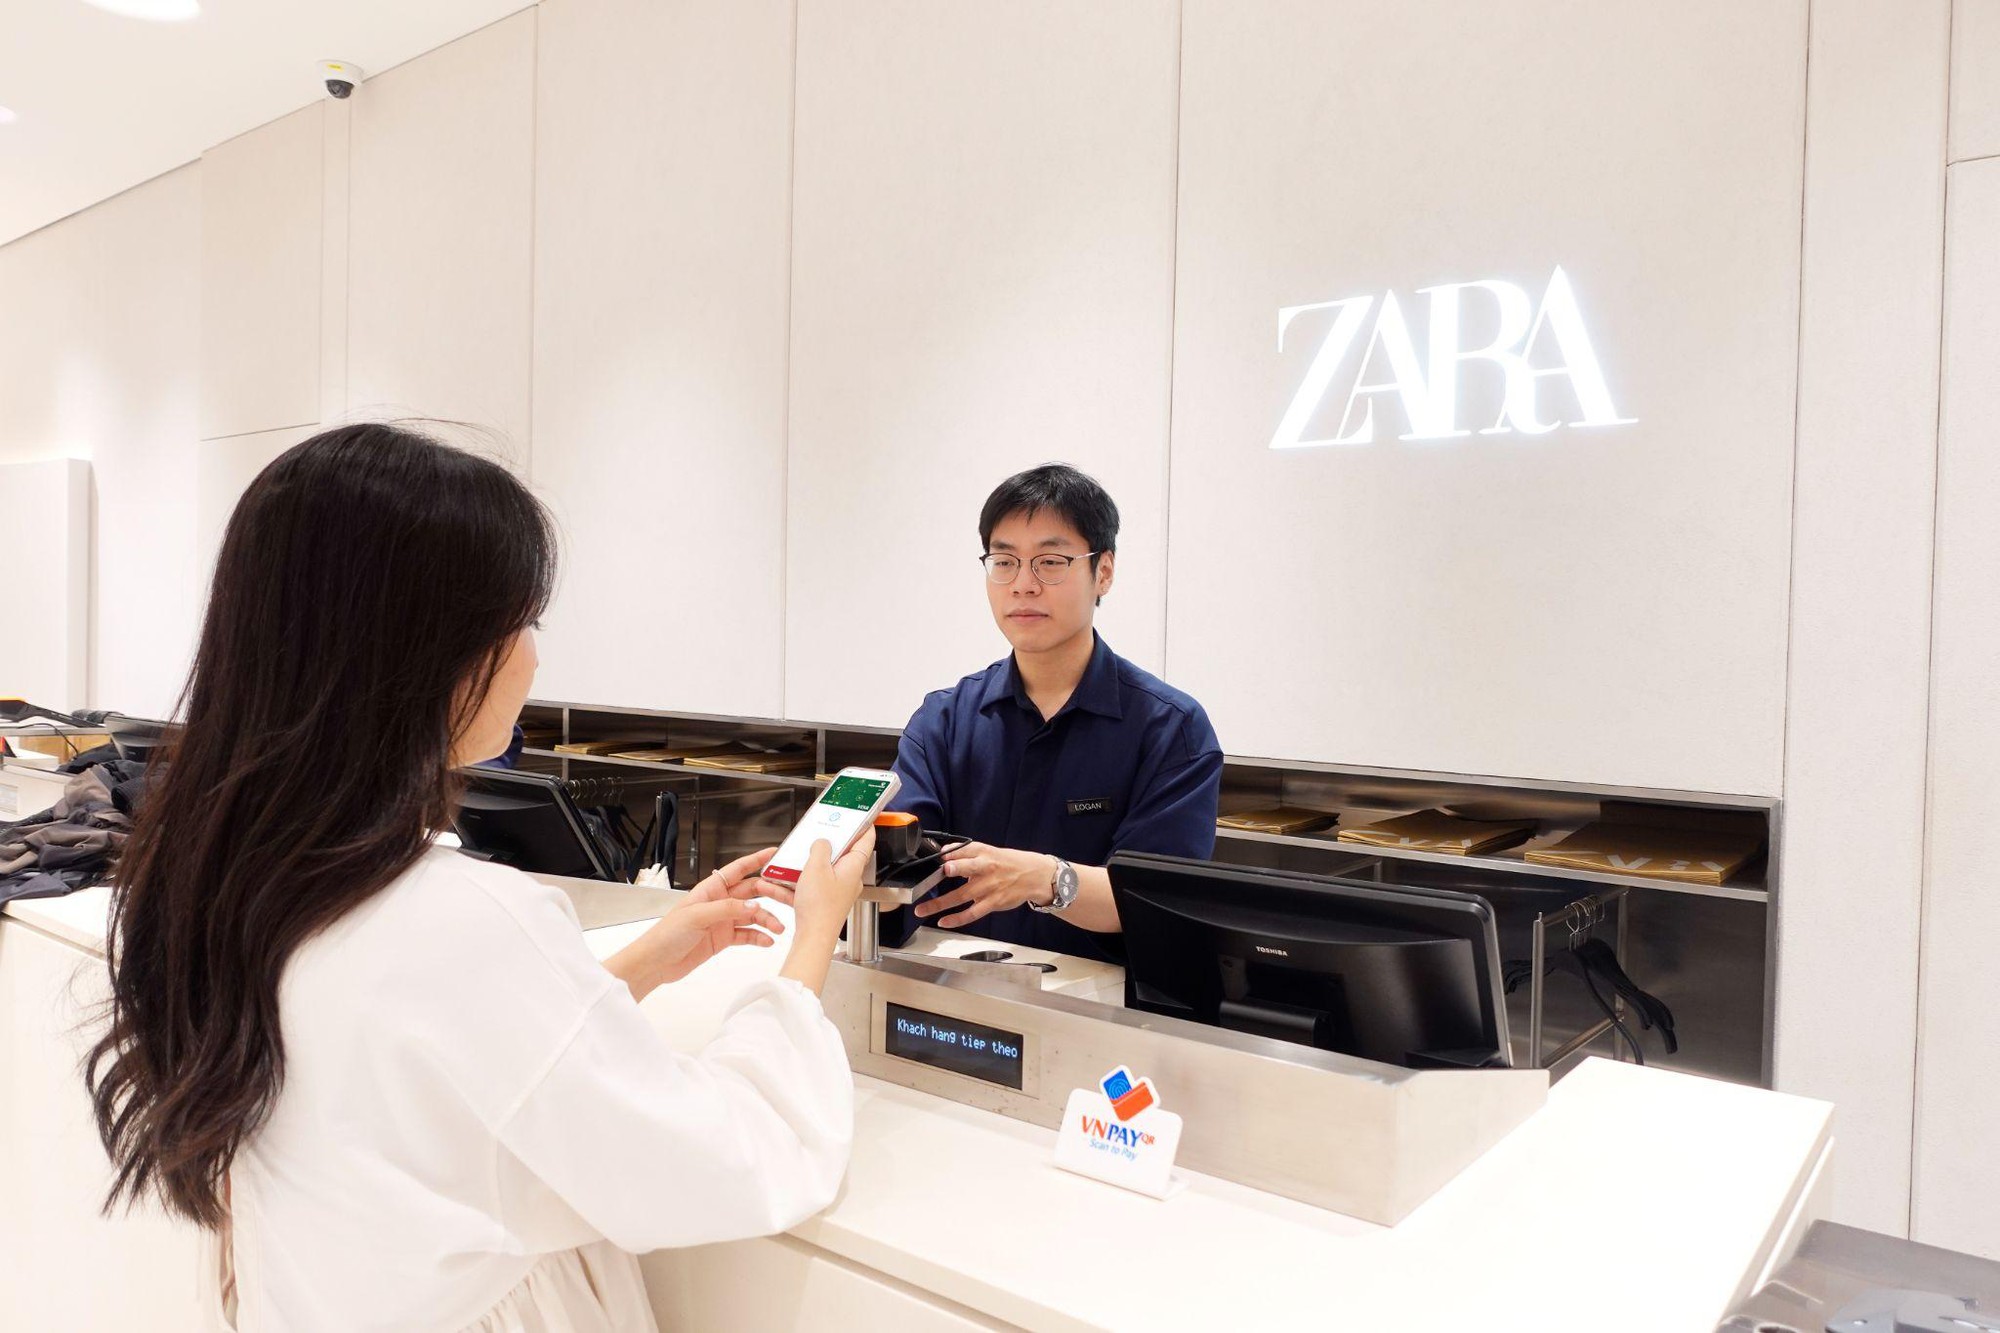 VNPAY đổ bộ ZARA và các thương hiệu cùng nhà Inditex, hoàn thiện trải nghiệm mua sắm cho giới mộ điệu thời trang - Ảnh 2.